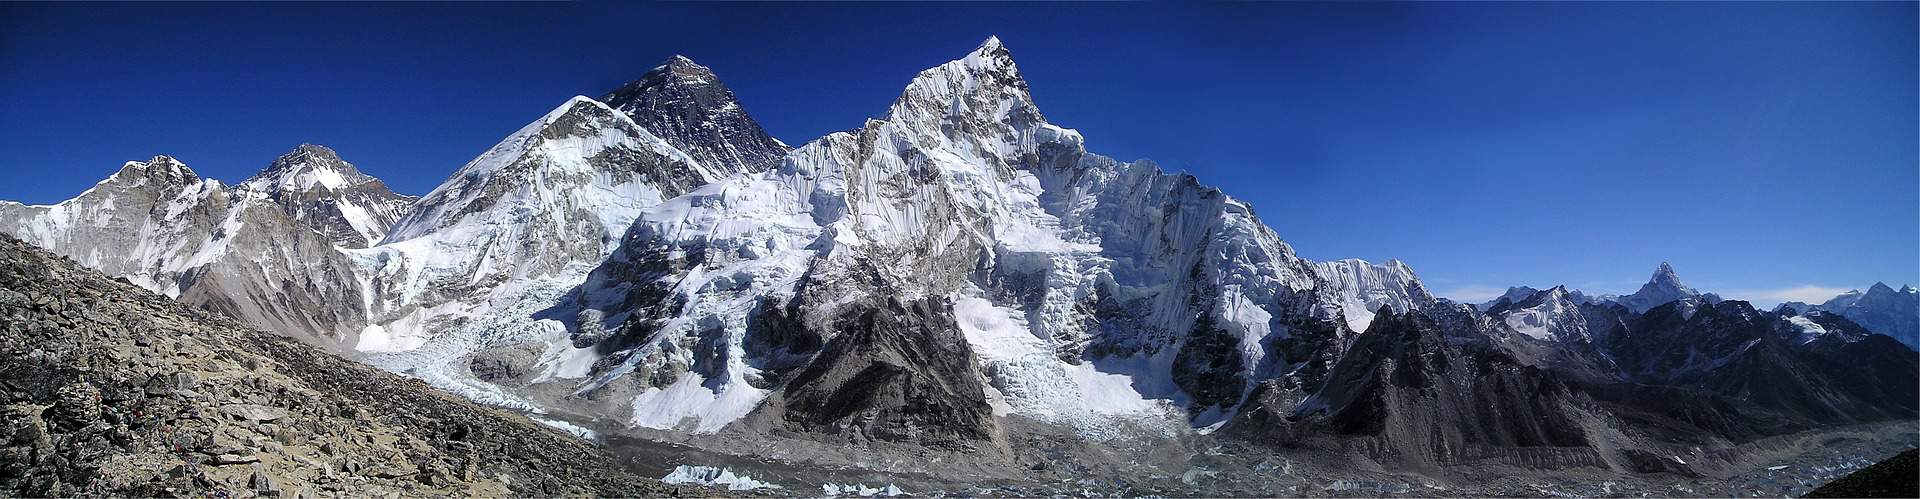 Sommet de la montagne Everest de l'Himalaya